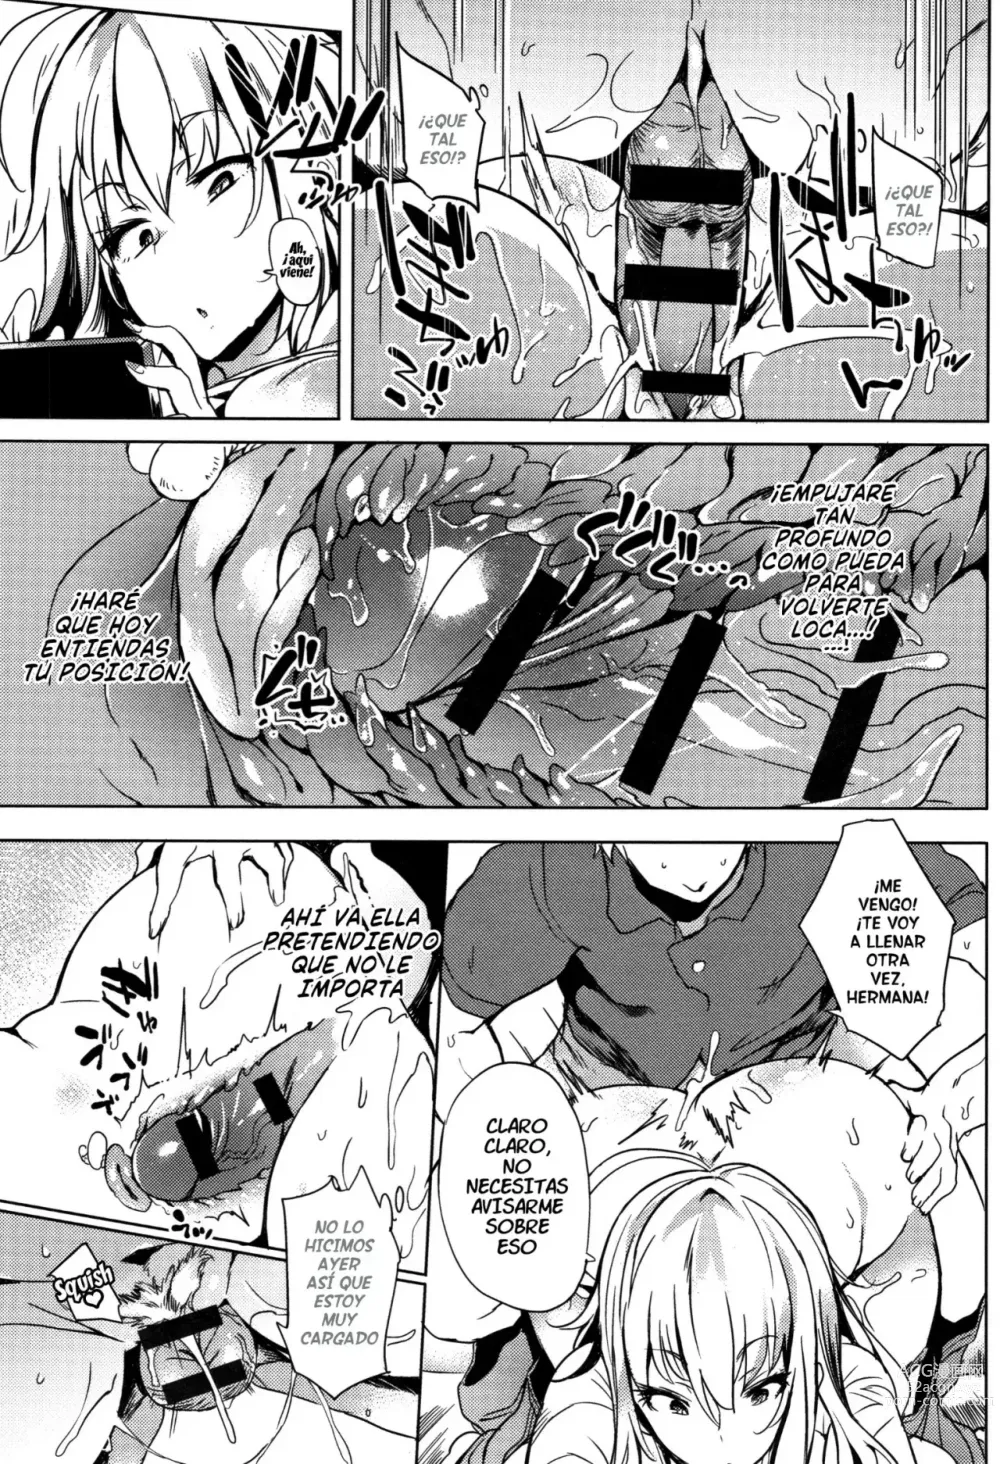 Page 5 of doujinshi Ugokazaru ane.